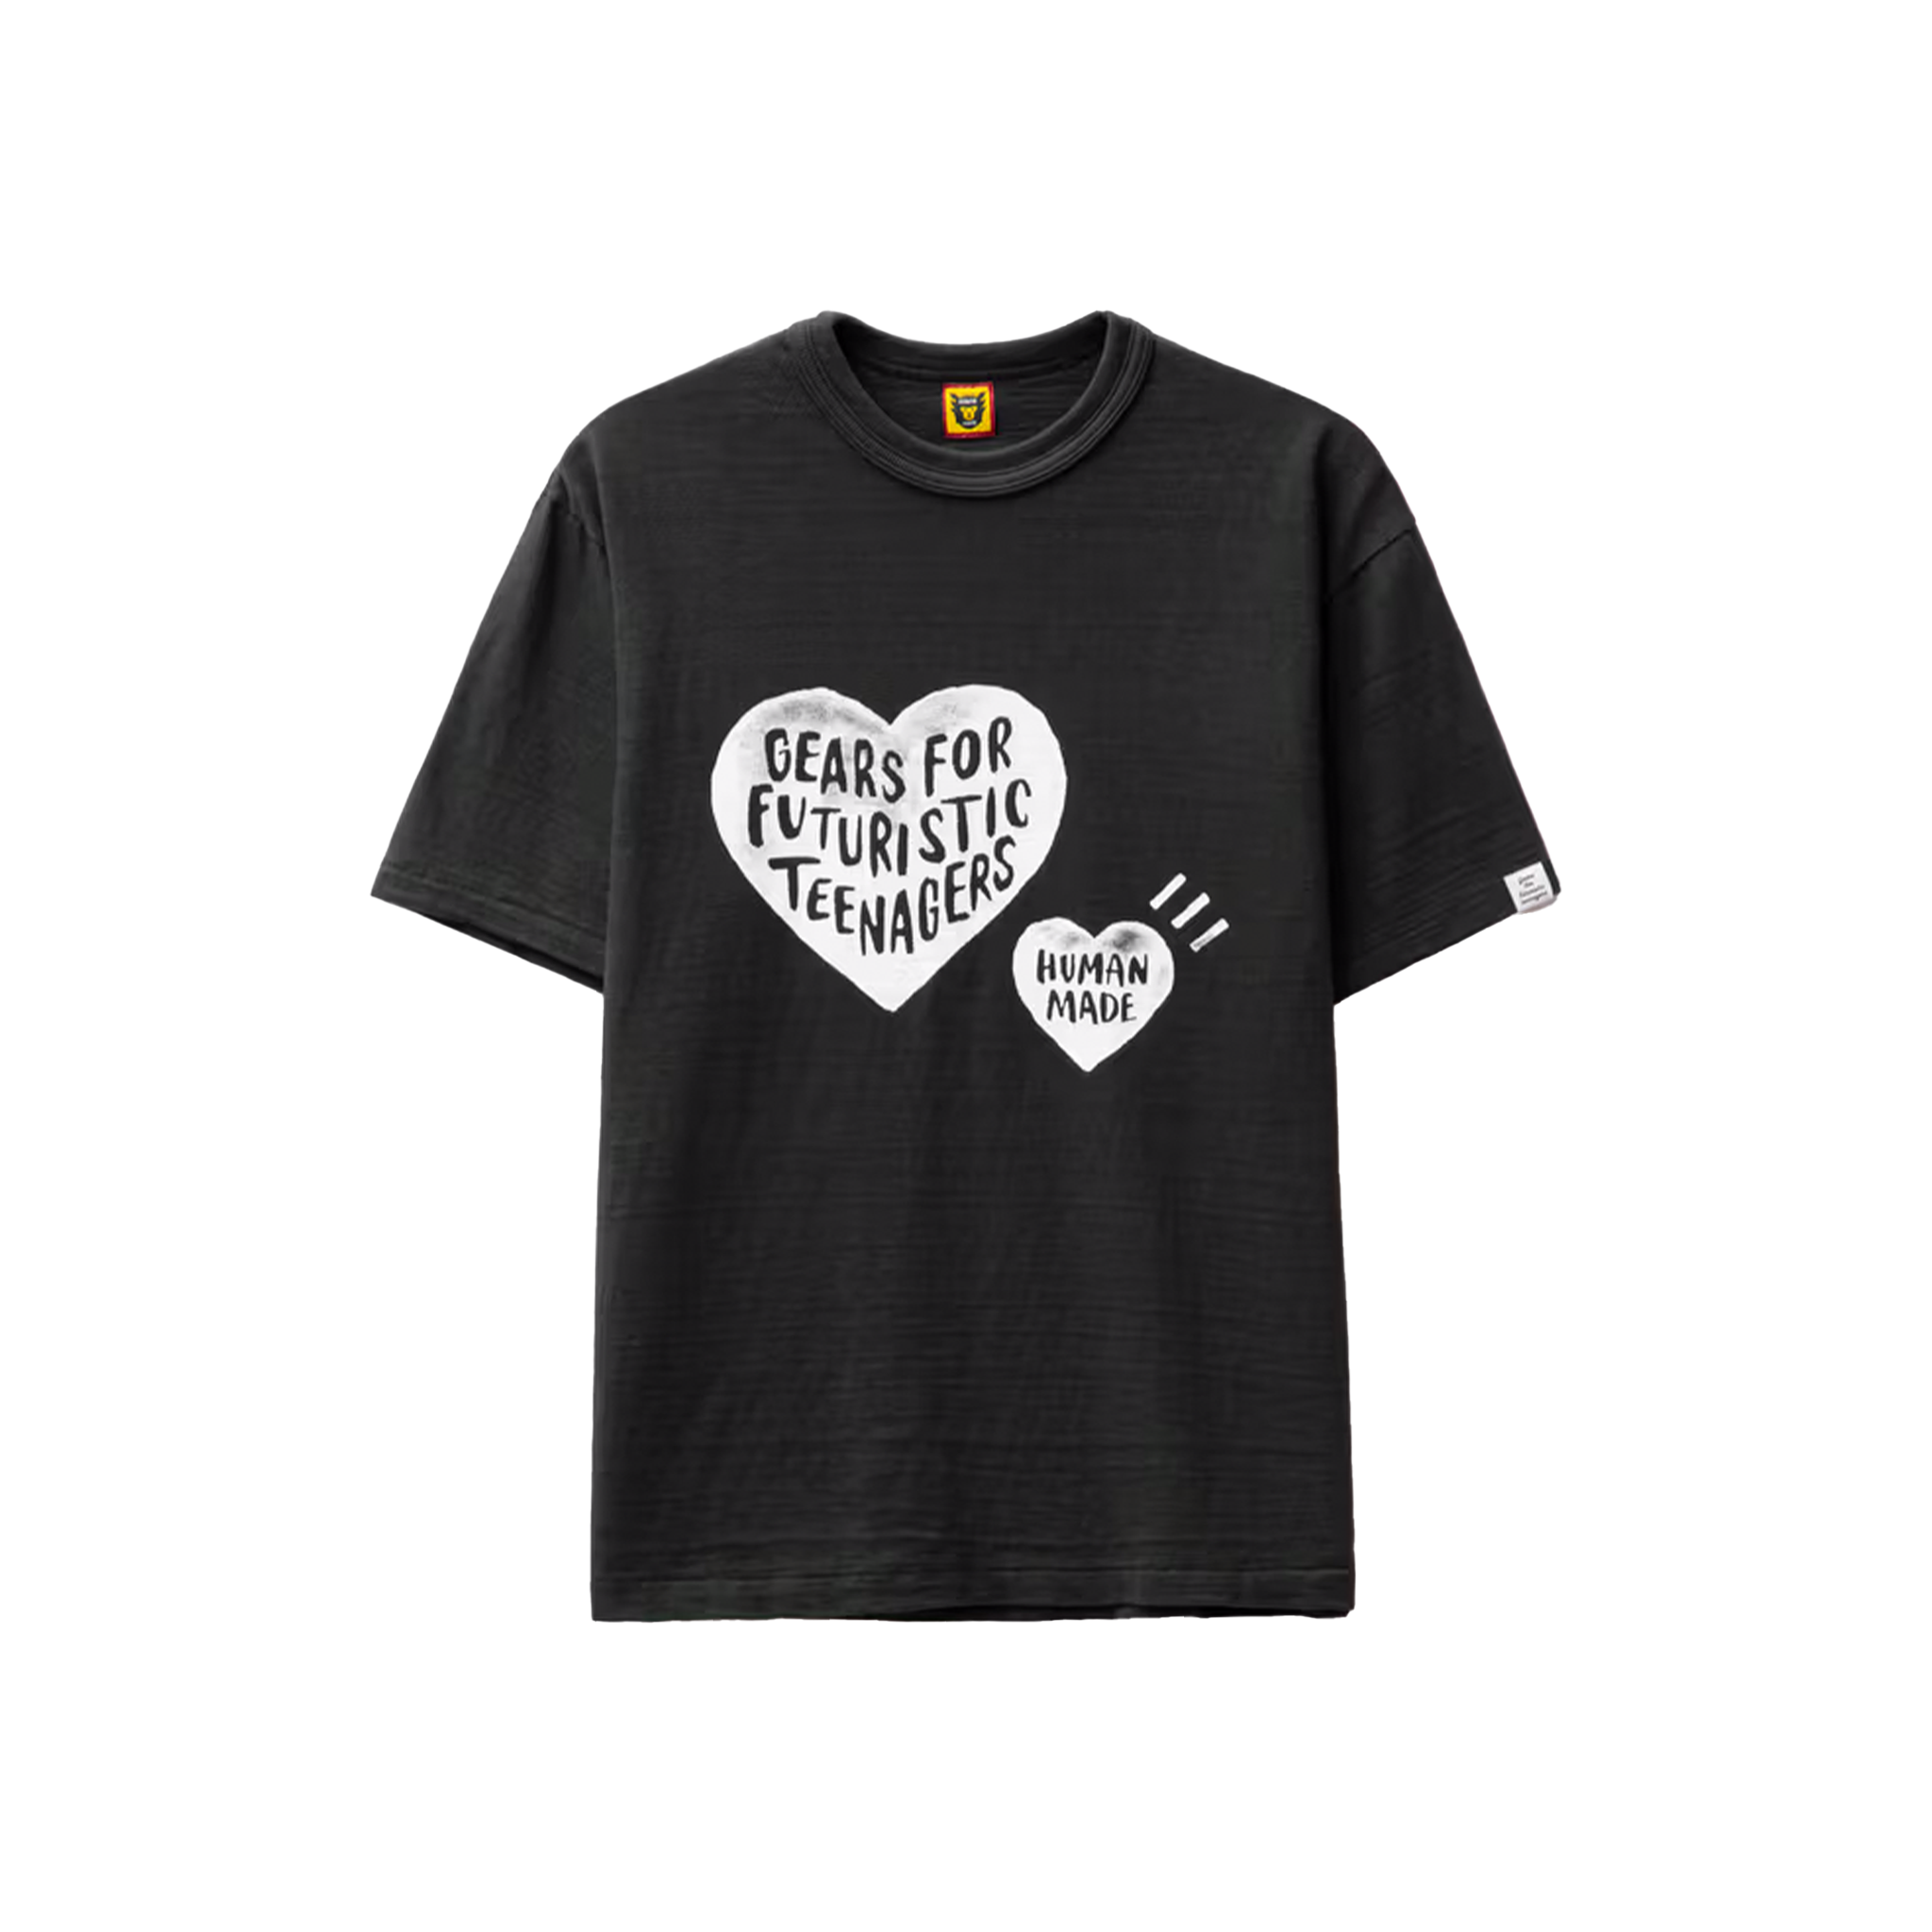 偽物は一切ありません黒L HUMAN MADE Graphic Tee Tシャツ heart ...